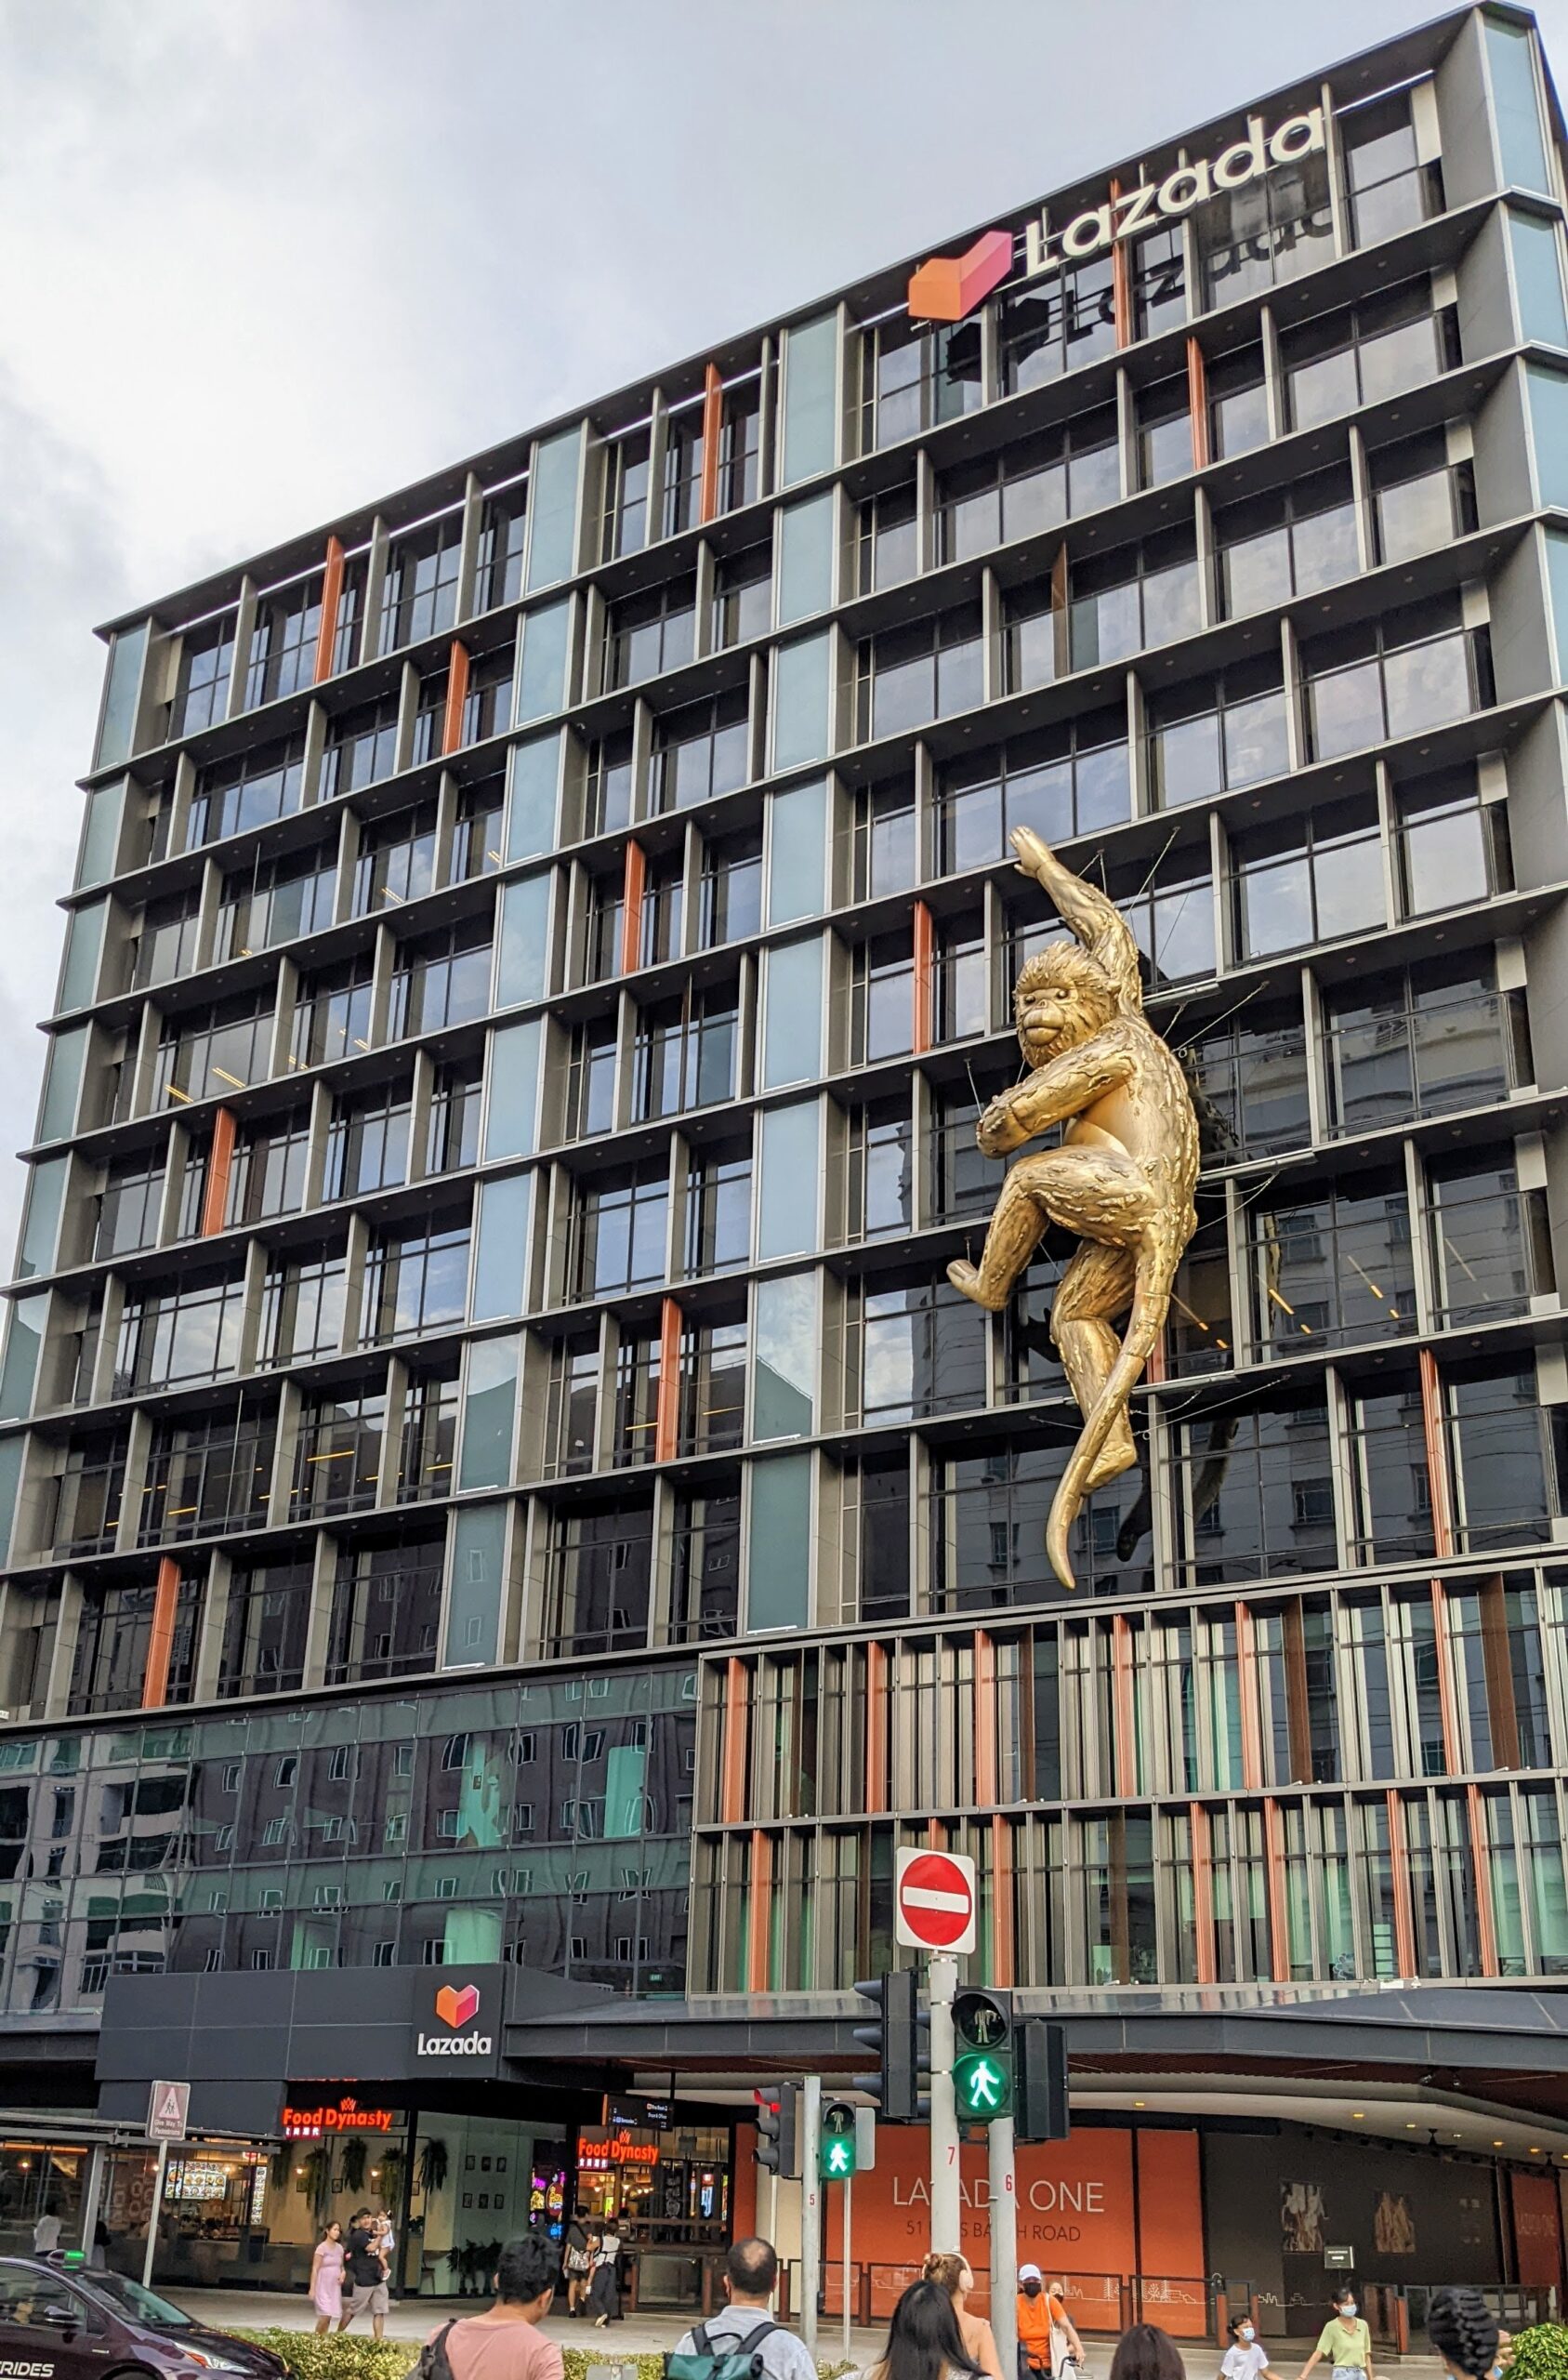 Lazada_one_golden_monkey_facade